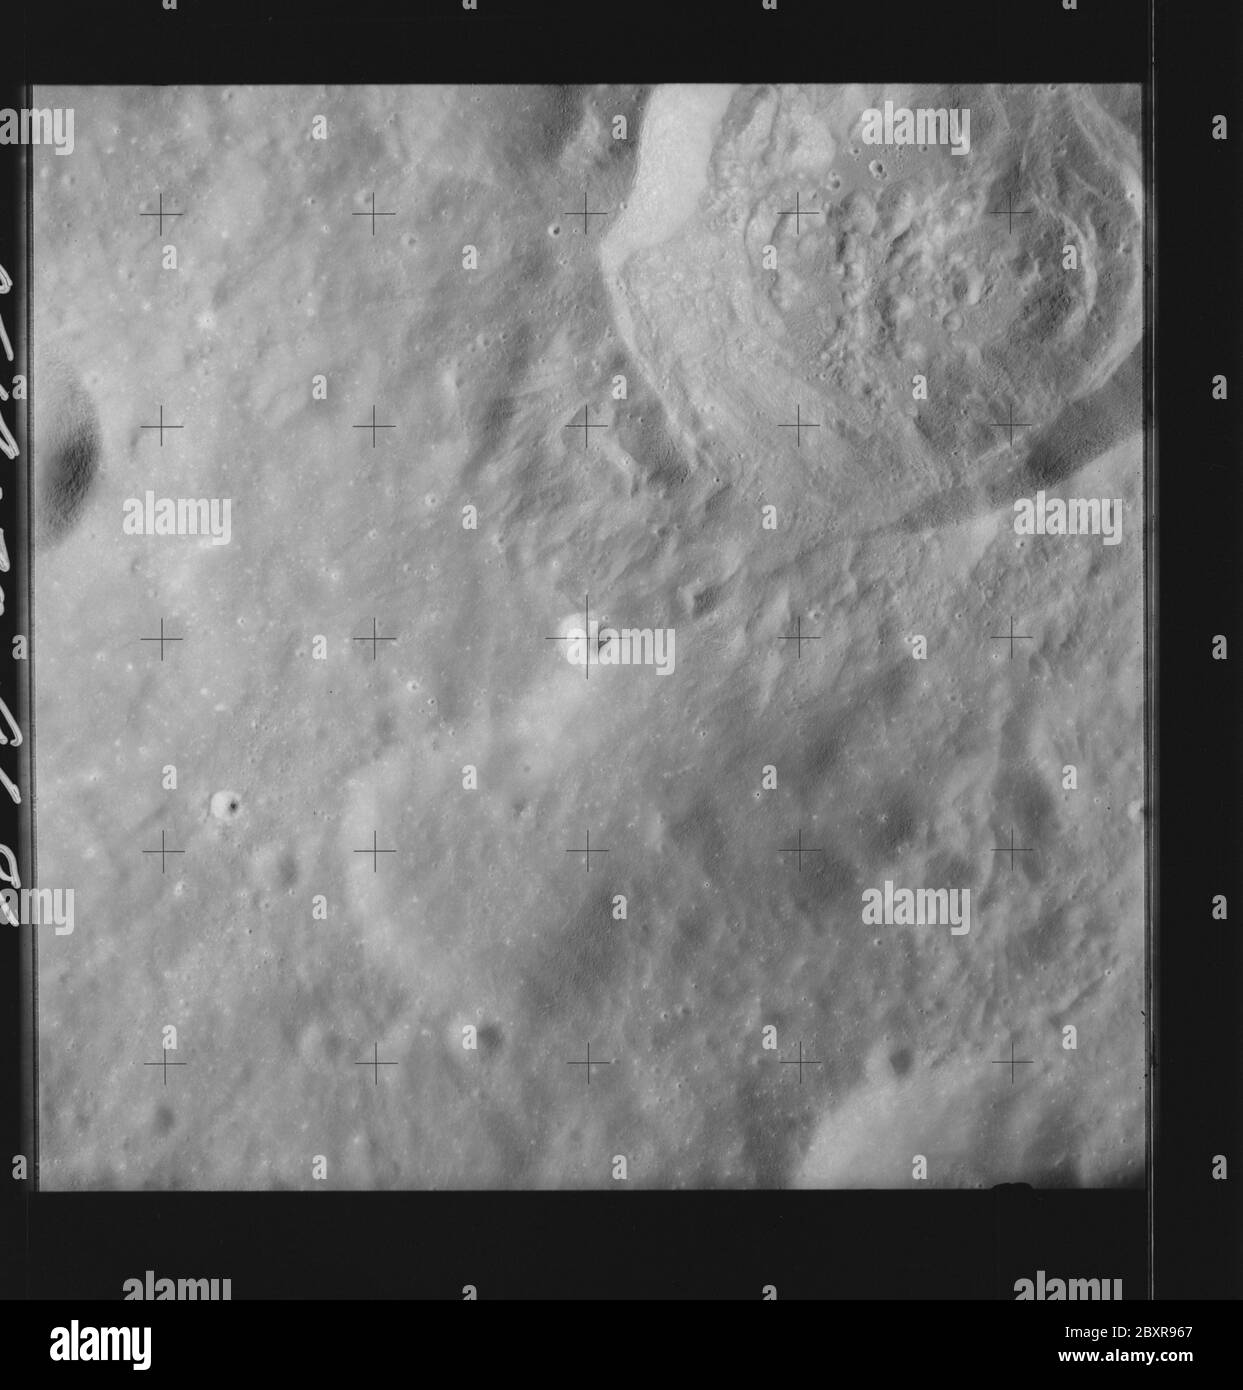 AS14-70-9686 - Apollo 14 - immagine della missione Apollo 14 - Vista della superficie lunare sul bordo nord-est del Cratere Pasteur.; scopo e contenuto: Il database originale descrive questo come: Descrizione: Vista della superficie lunare sul bordo nord-est del Cratere Pasteur. Sono state scattate immagini sulla Rivoluzione 26 della missione Apollo 14. Il caricatore di pellicola originale era etichettato Q, il tipo di pellicola era 3400BW (Panatomic-X, Nero e Bianco), lente da 80 mm con un'elevazione del sole di 30 gradi. La scala approssimativa della foto è 1:1,380,000. Il punto principale della latitudine era 7.5S per Longitudine 111.0E, con un'inclinazione verticale della telecamera. Termine oggetto Foto Stock